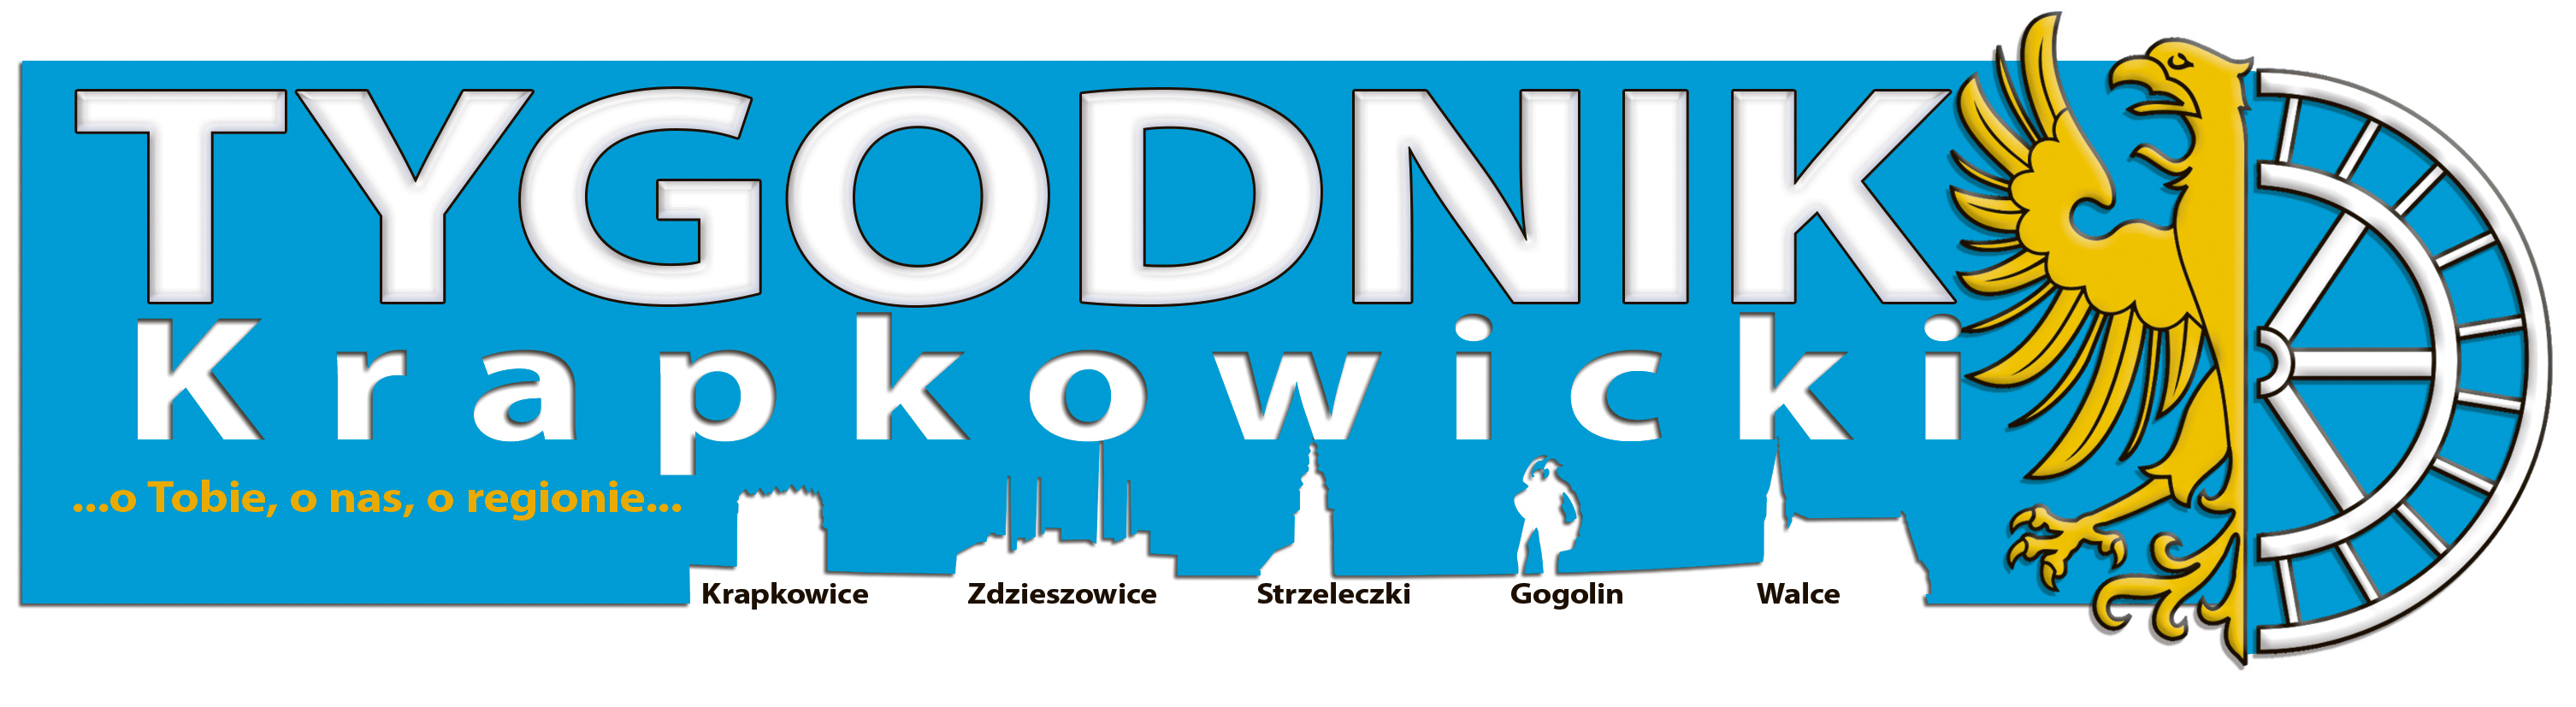 Tygodnik Krapkowicki logo